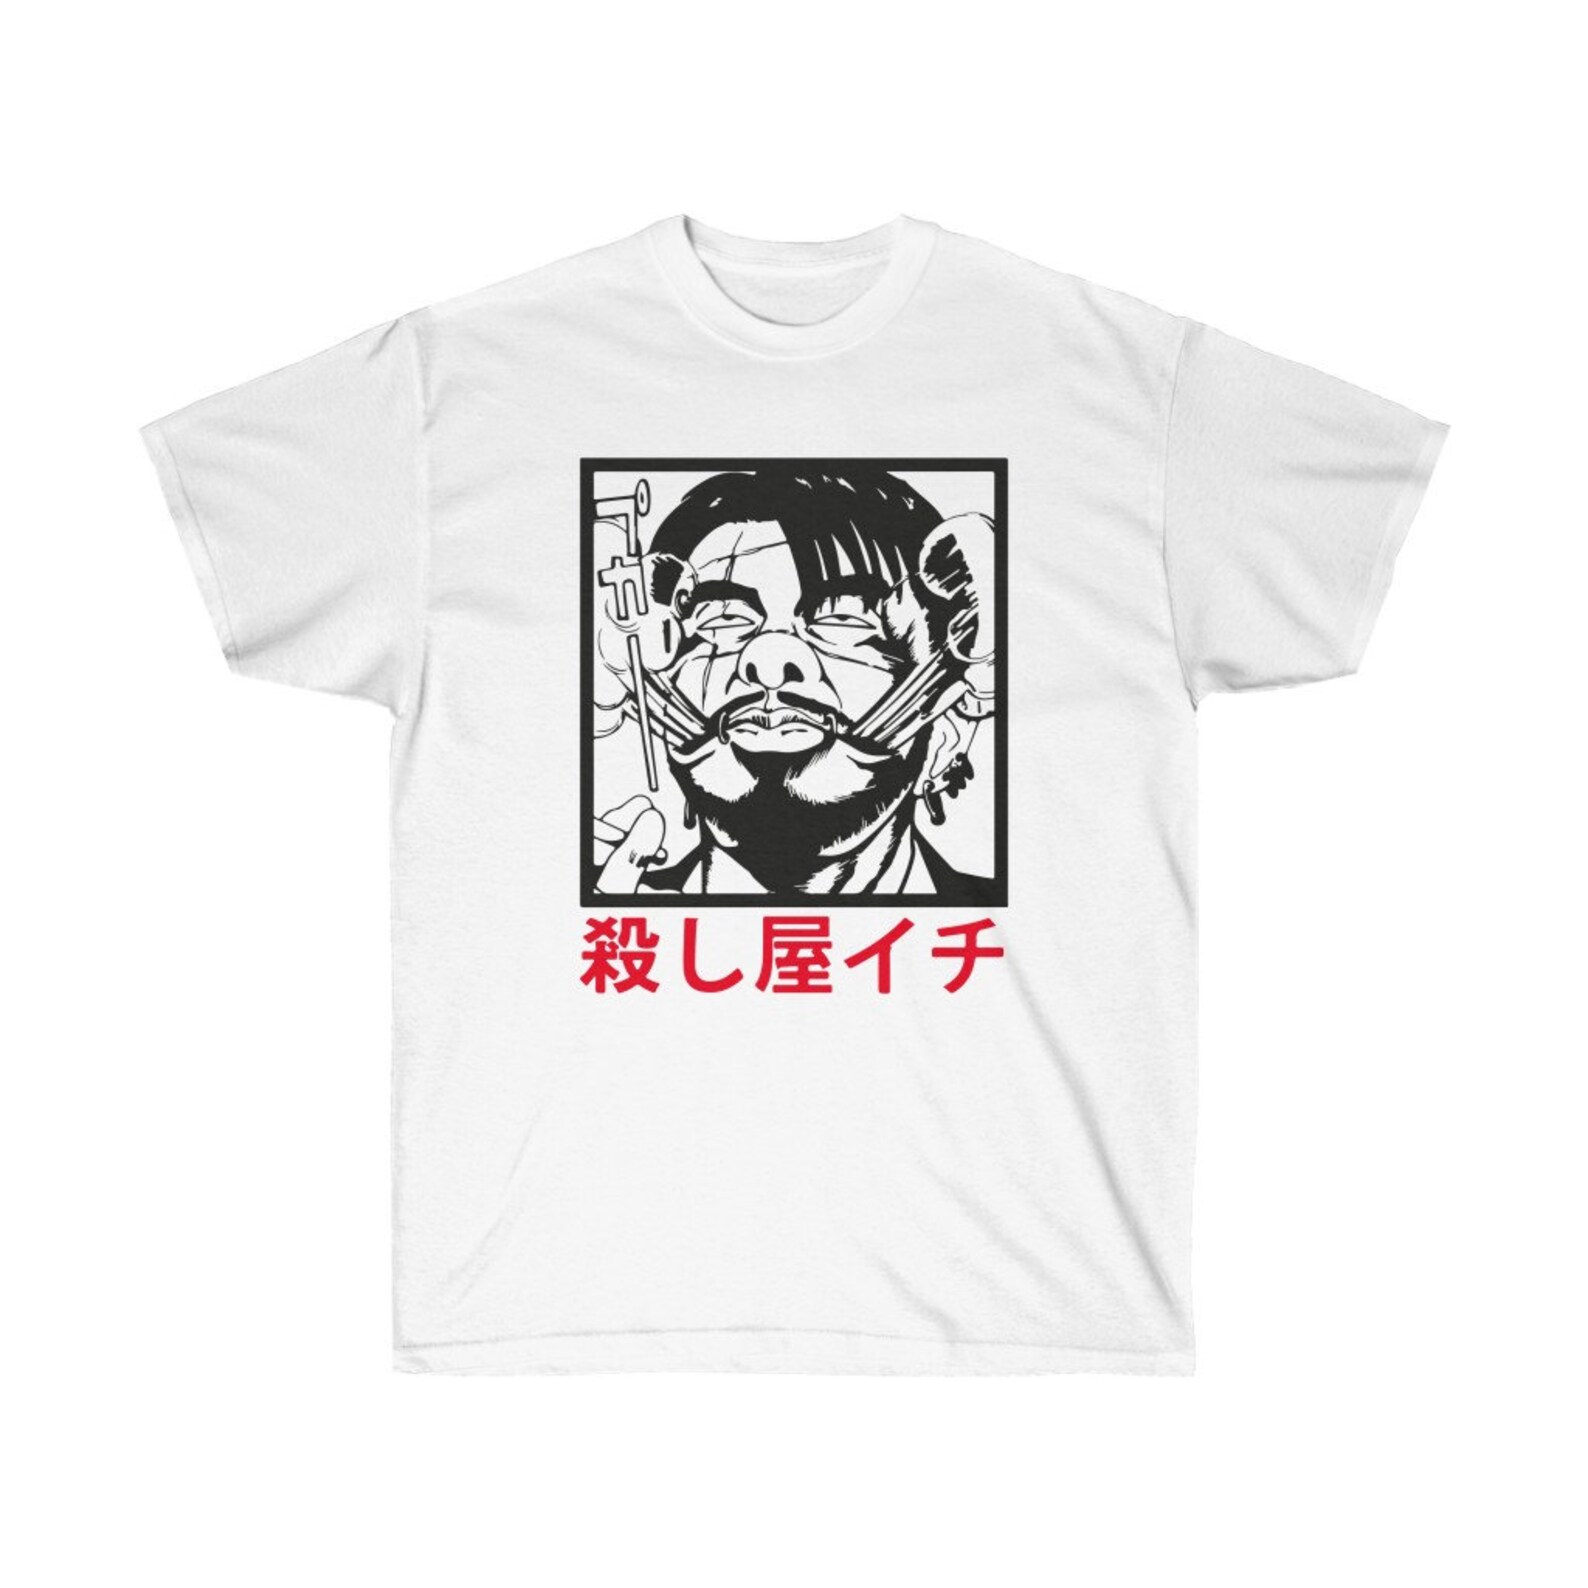 Ichi the Killer Manga Art T-Shirt Mens and Womens Tee | Etsy